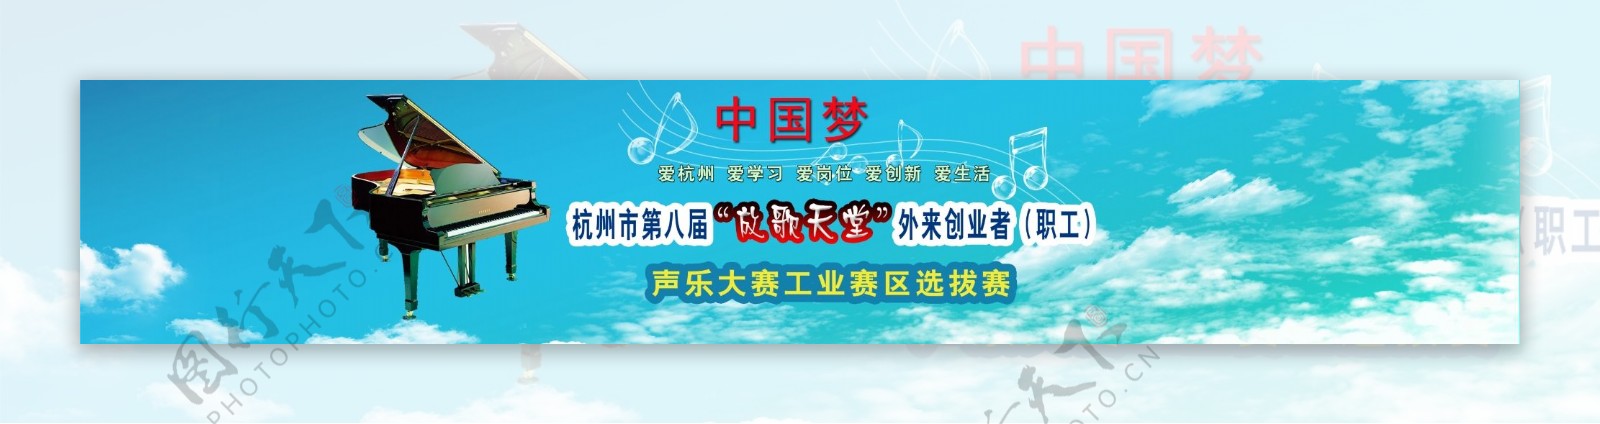 声乐大赛选拔赛背景广图片